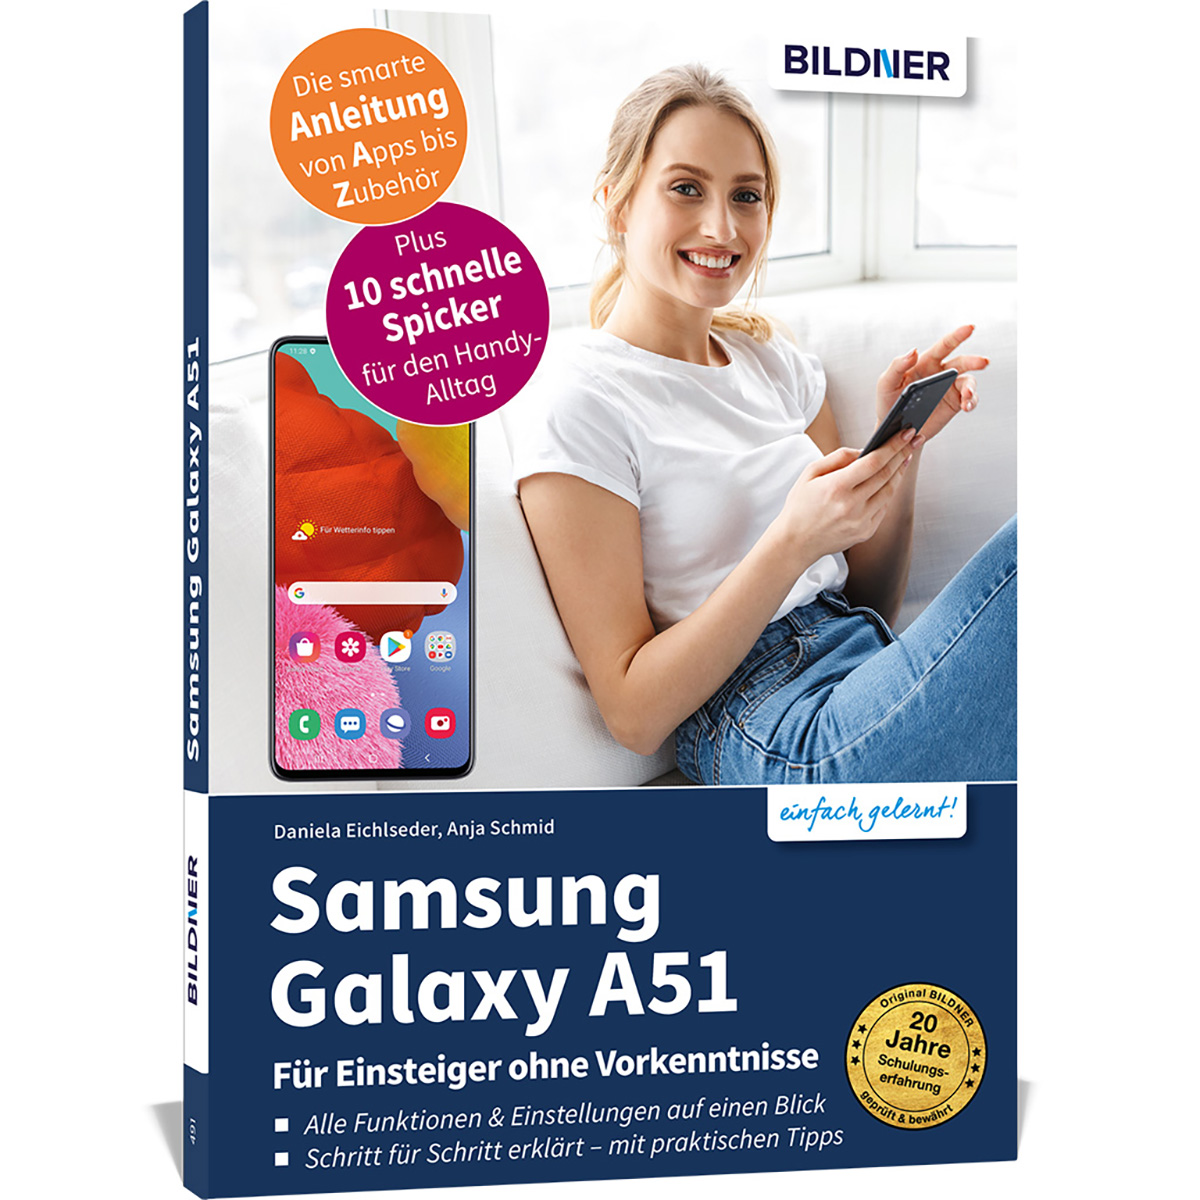 Samsung Galaxy A51 - Für Einsteiger Vorkenntnisse ohne